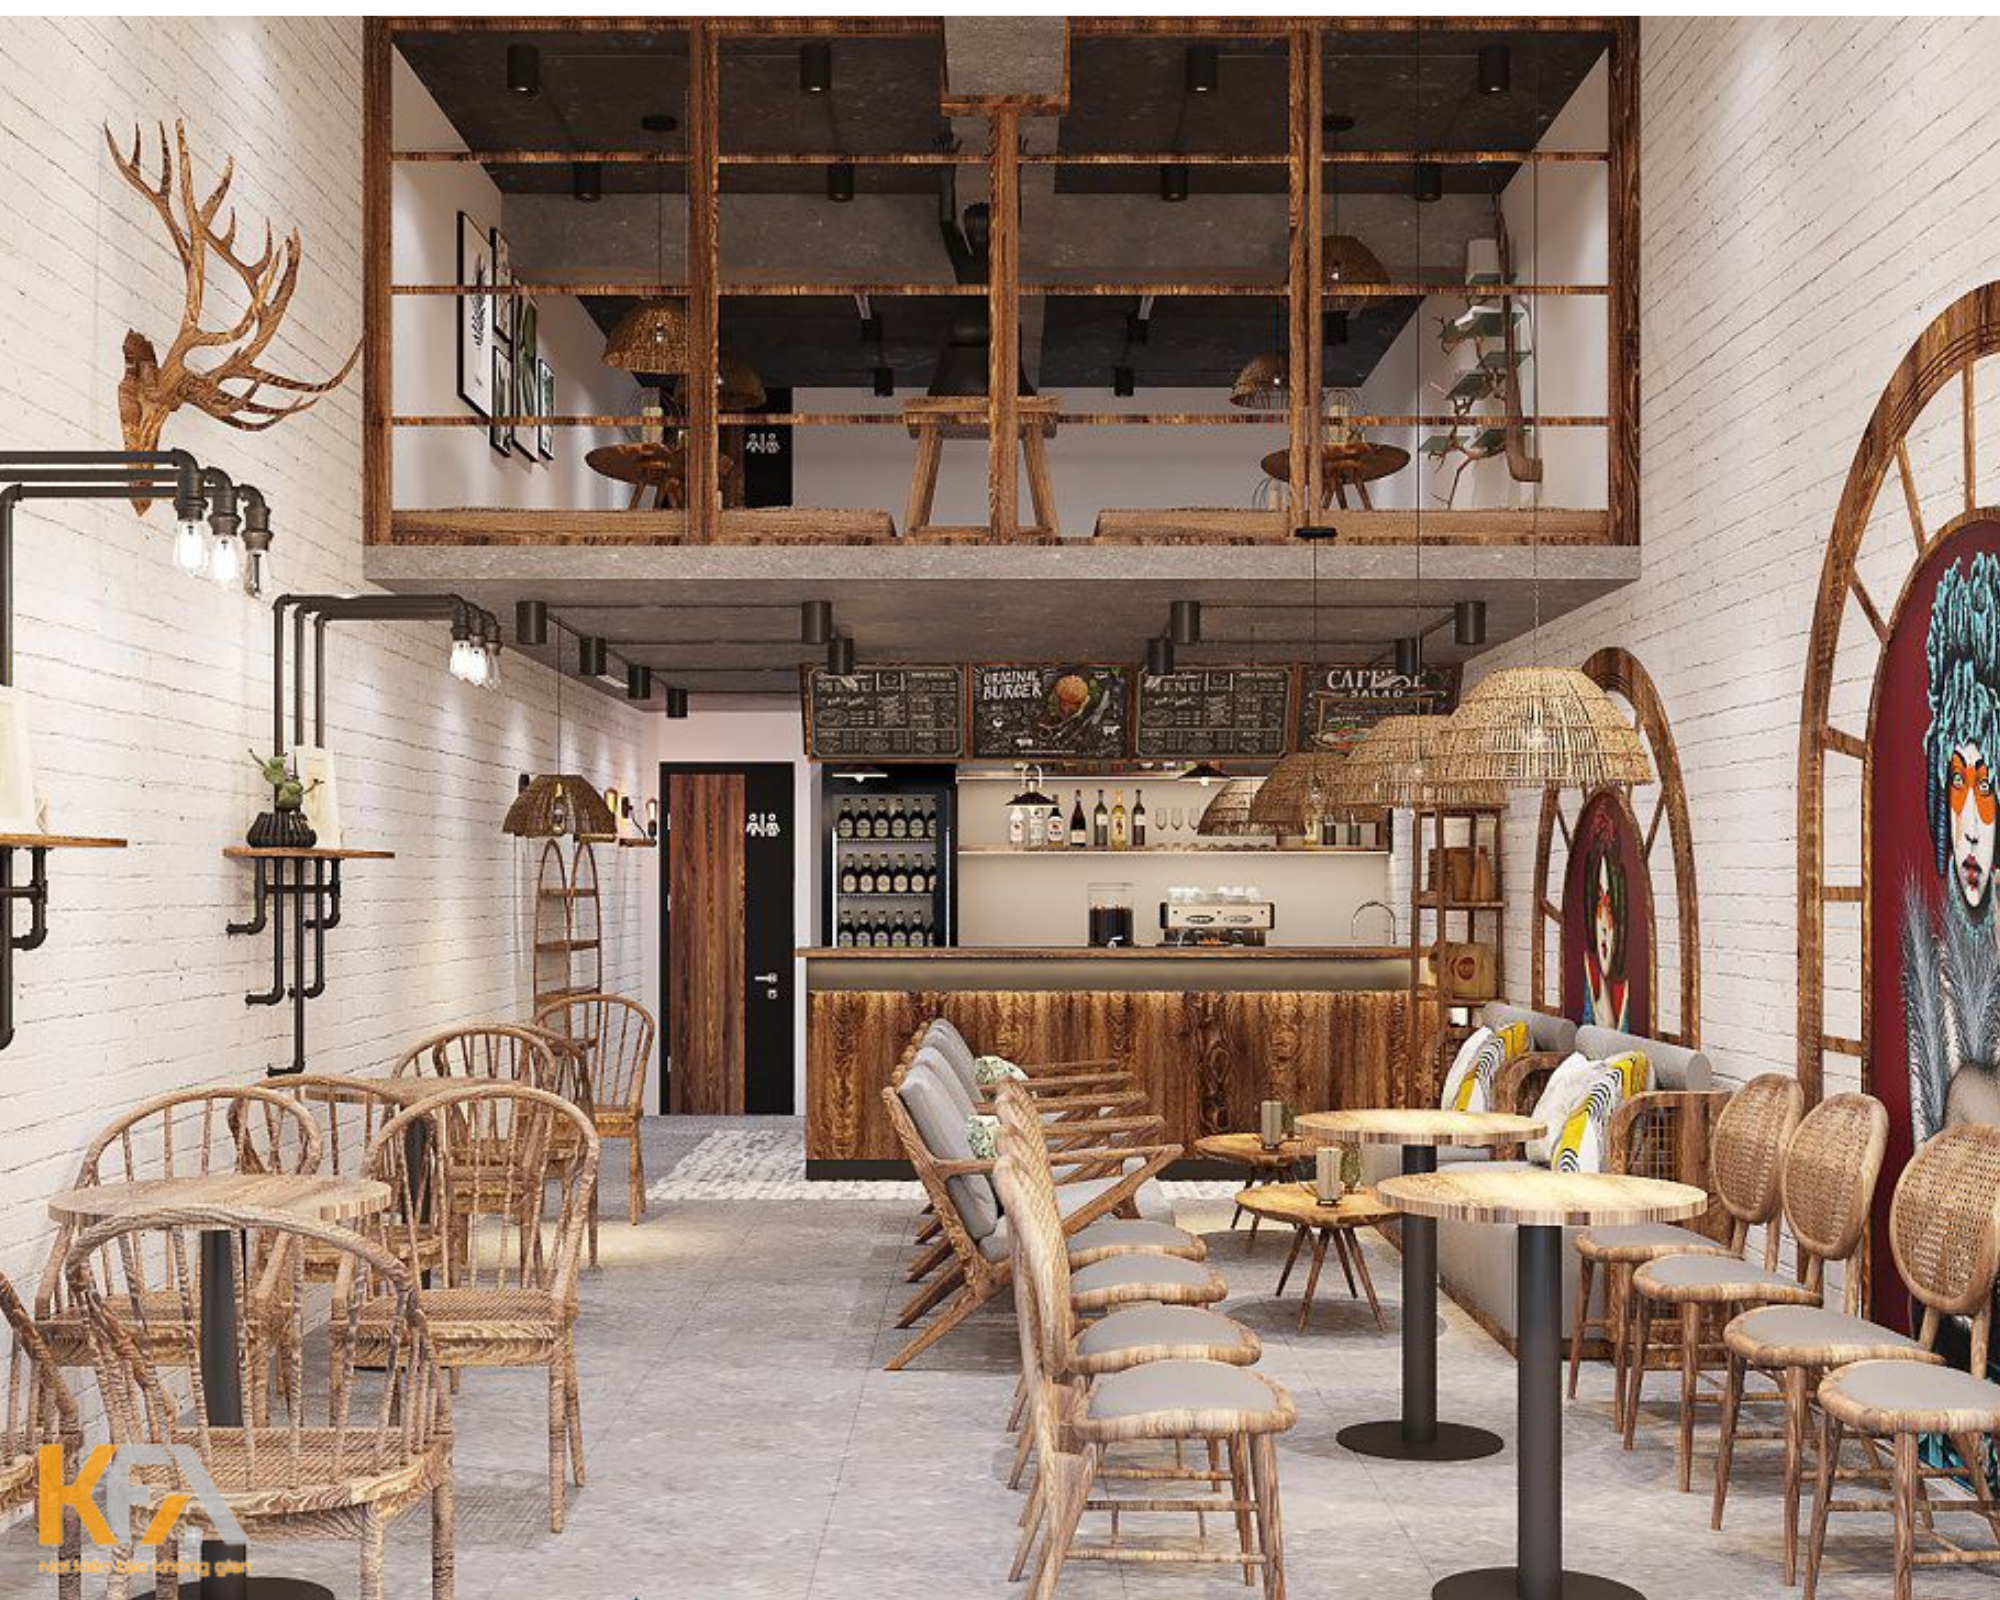 Thiết kế không quan quán cafe diện tích 45m2 - 2 tầng tone màu gỗ nhẹ nhàng ấm áp